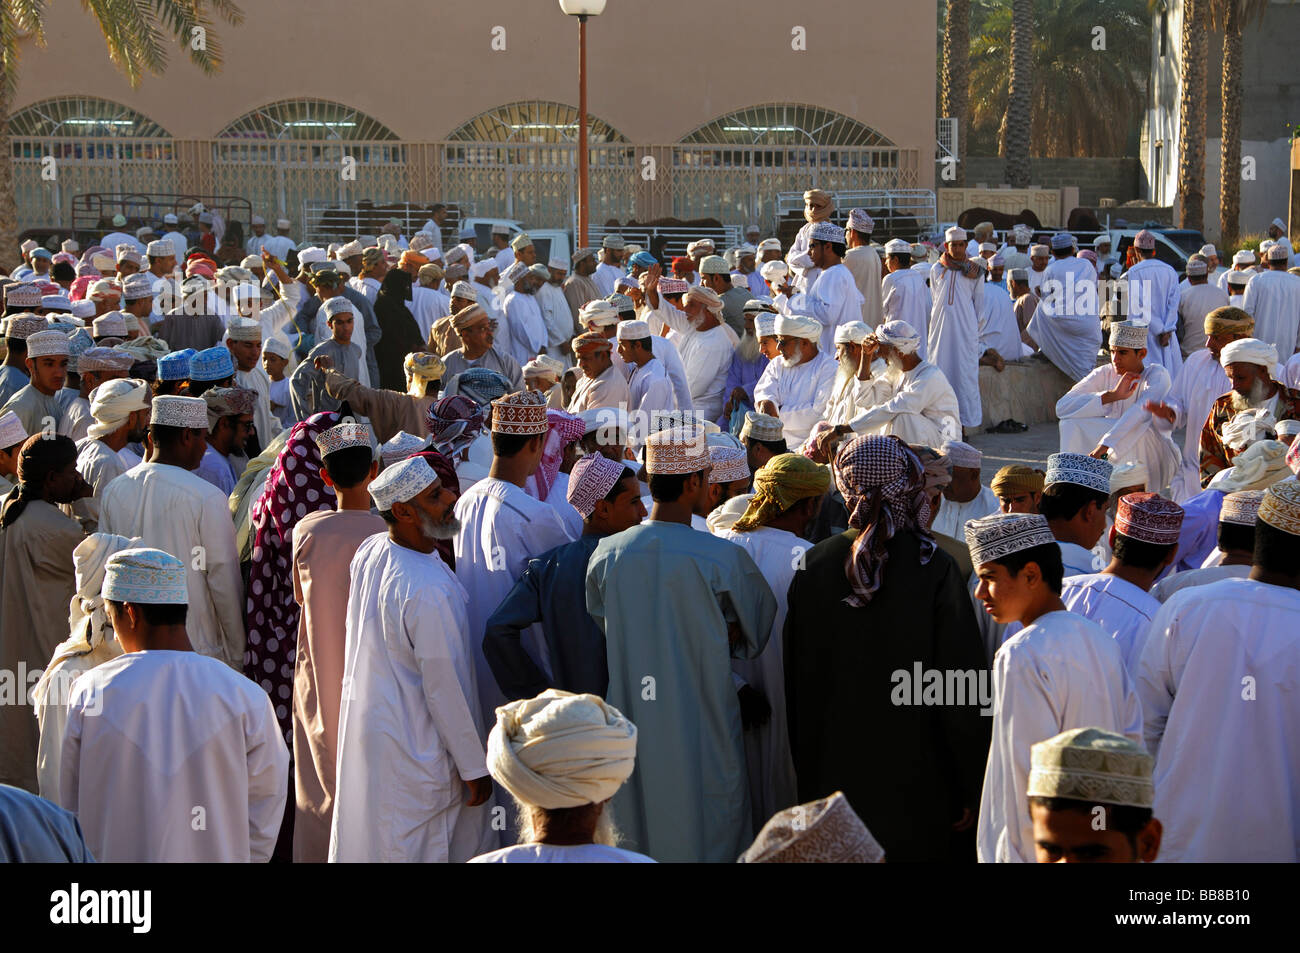 Scène de foule sur un marché au bétail, les hommes omanais portant un costume national Dishdasha et une cape ou une Kummah Mussar turban sur la tête Banque D'Images